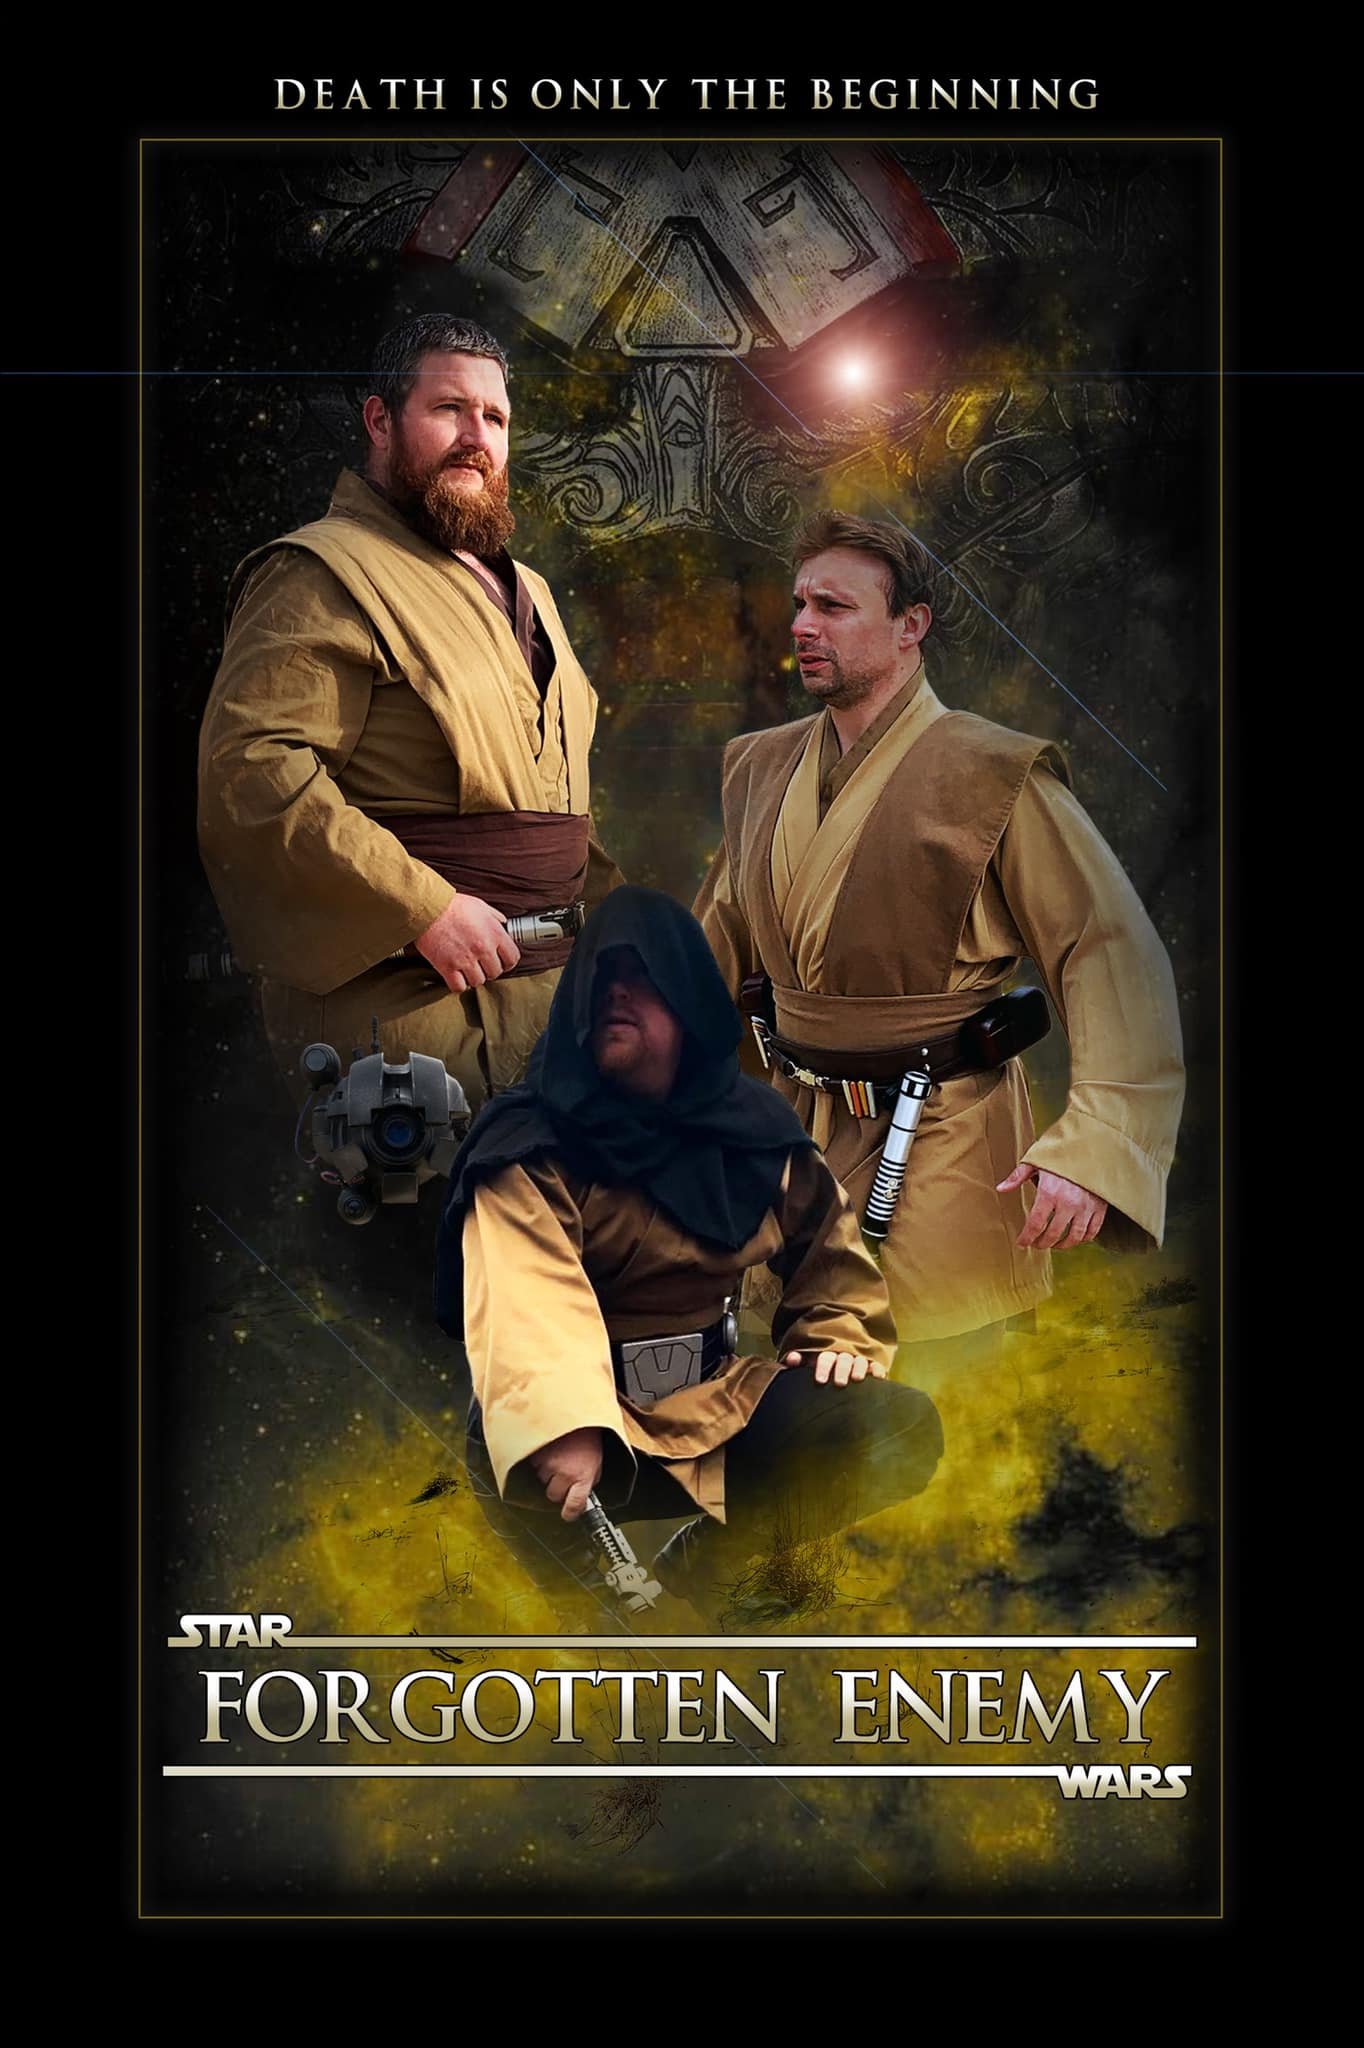 Star Wars: Forgotten Enemy | Fan Film de Star Wars tem trailer divulgado no canal AListProductions